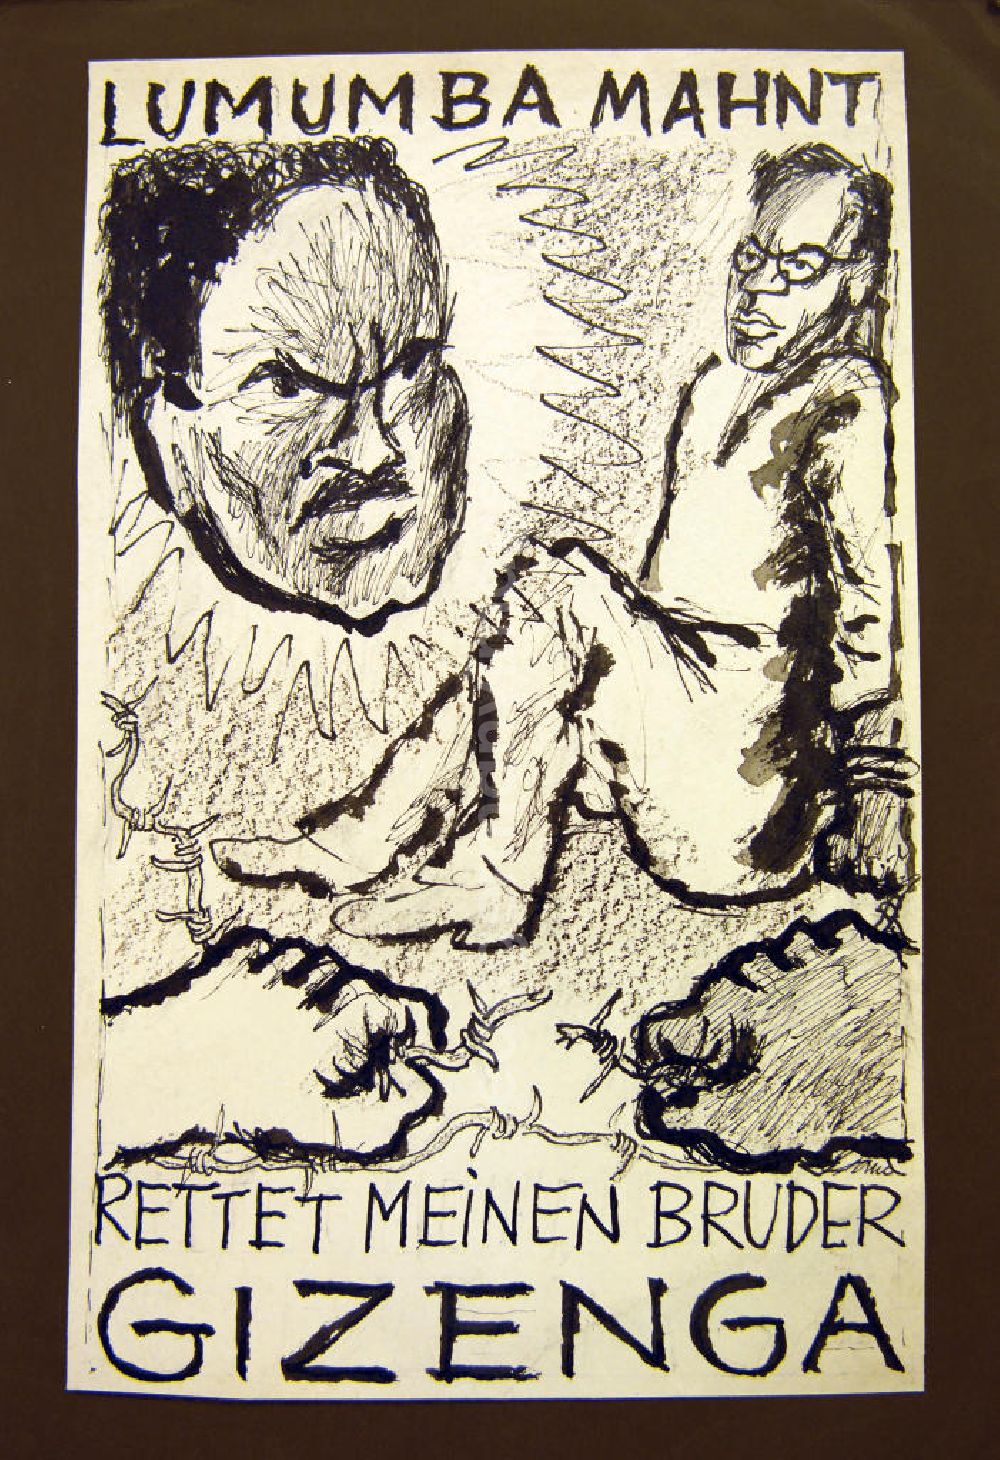 GDR picture archive: Berlin - Zeichnung von Herbert Sandberg Lumumba mahnt: Rettet meinen Bruder Gizenga 20,